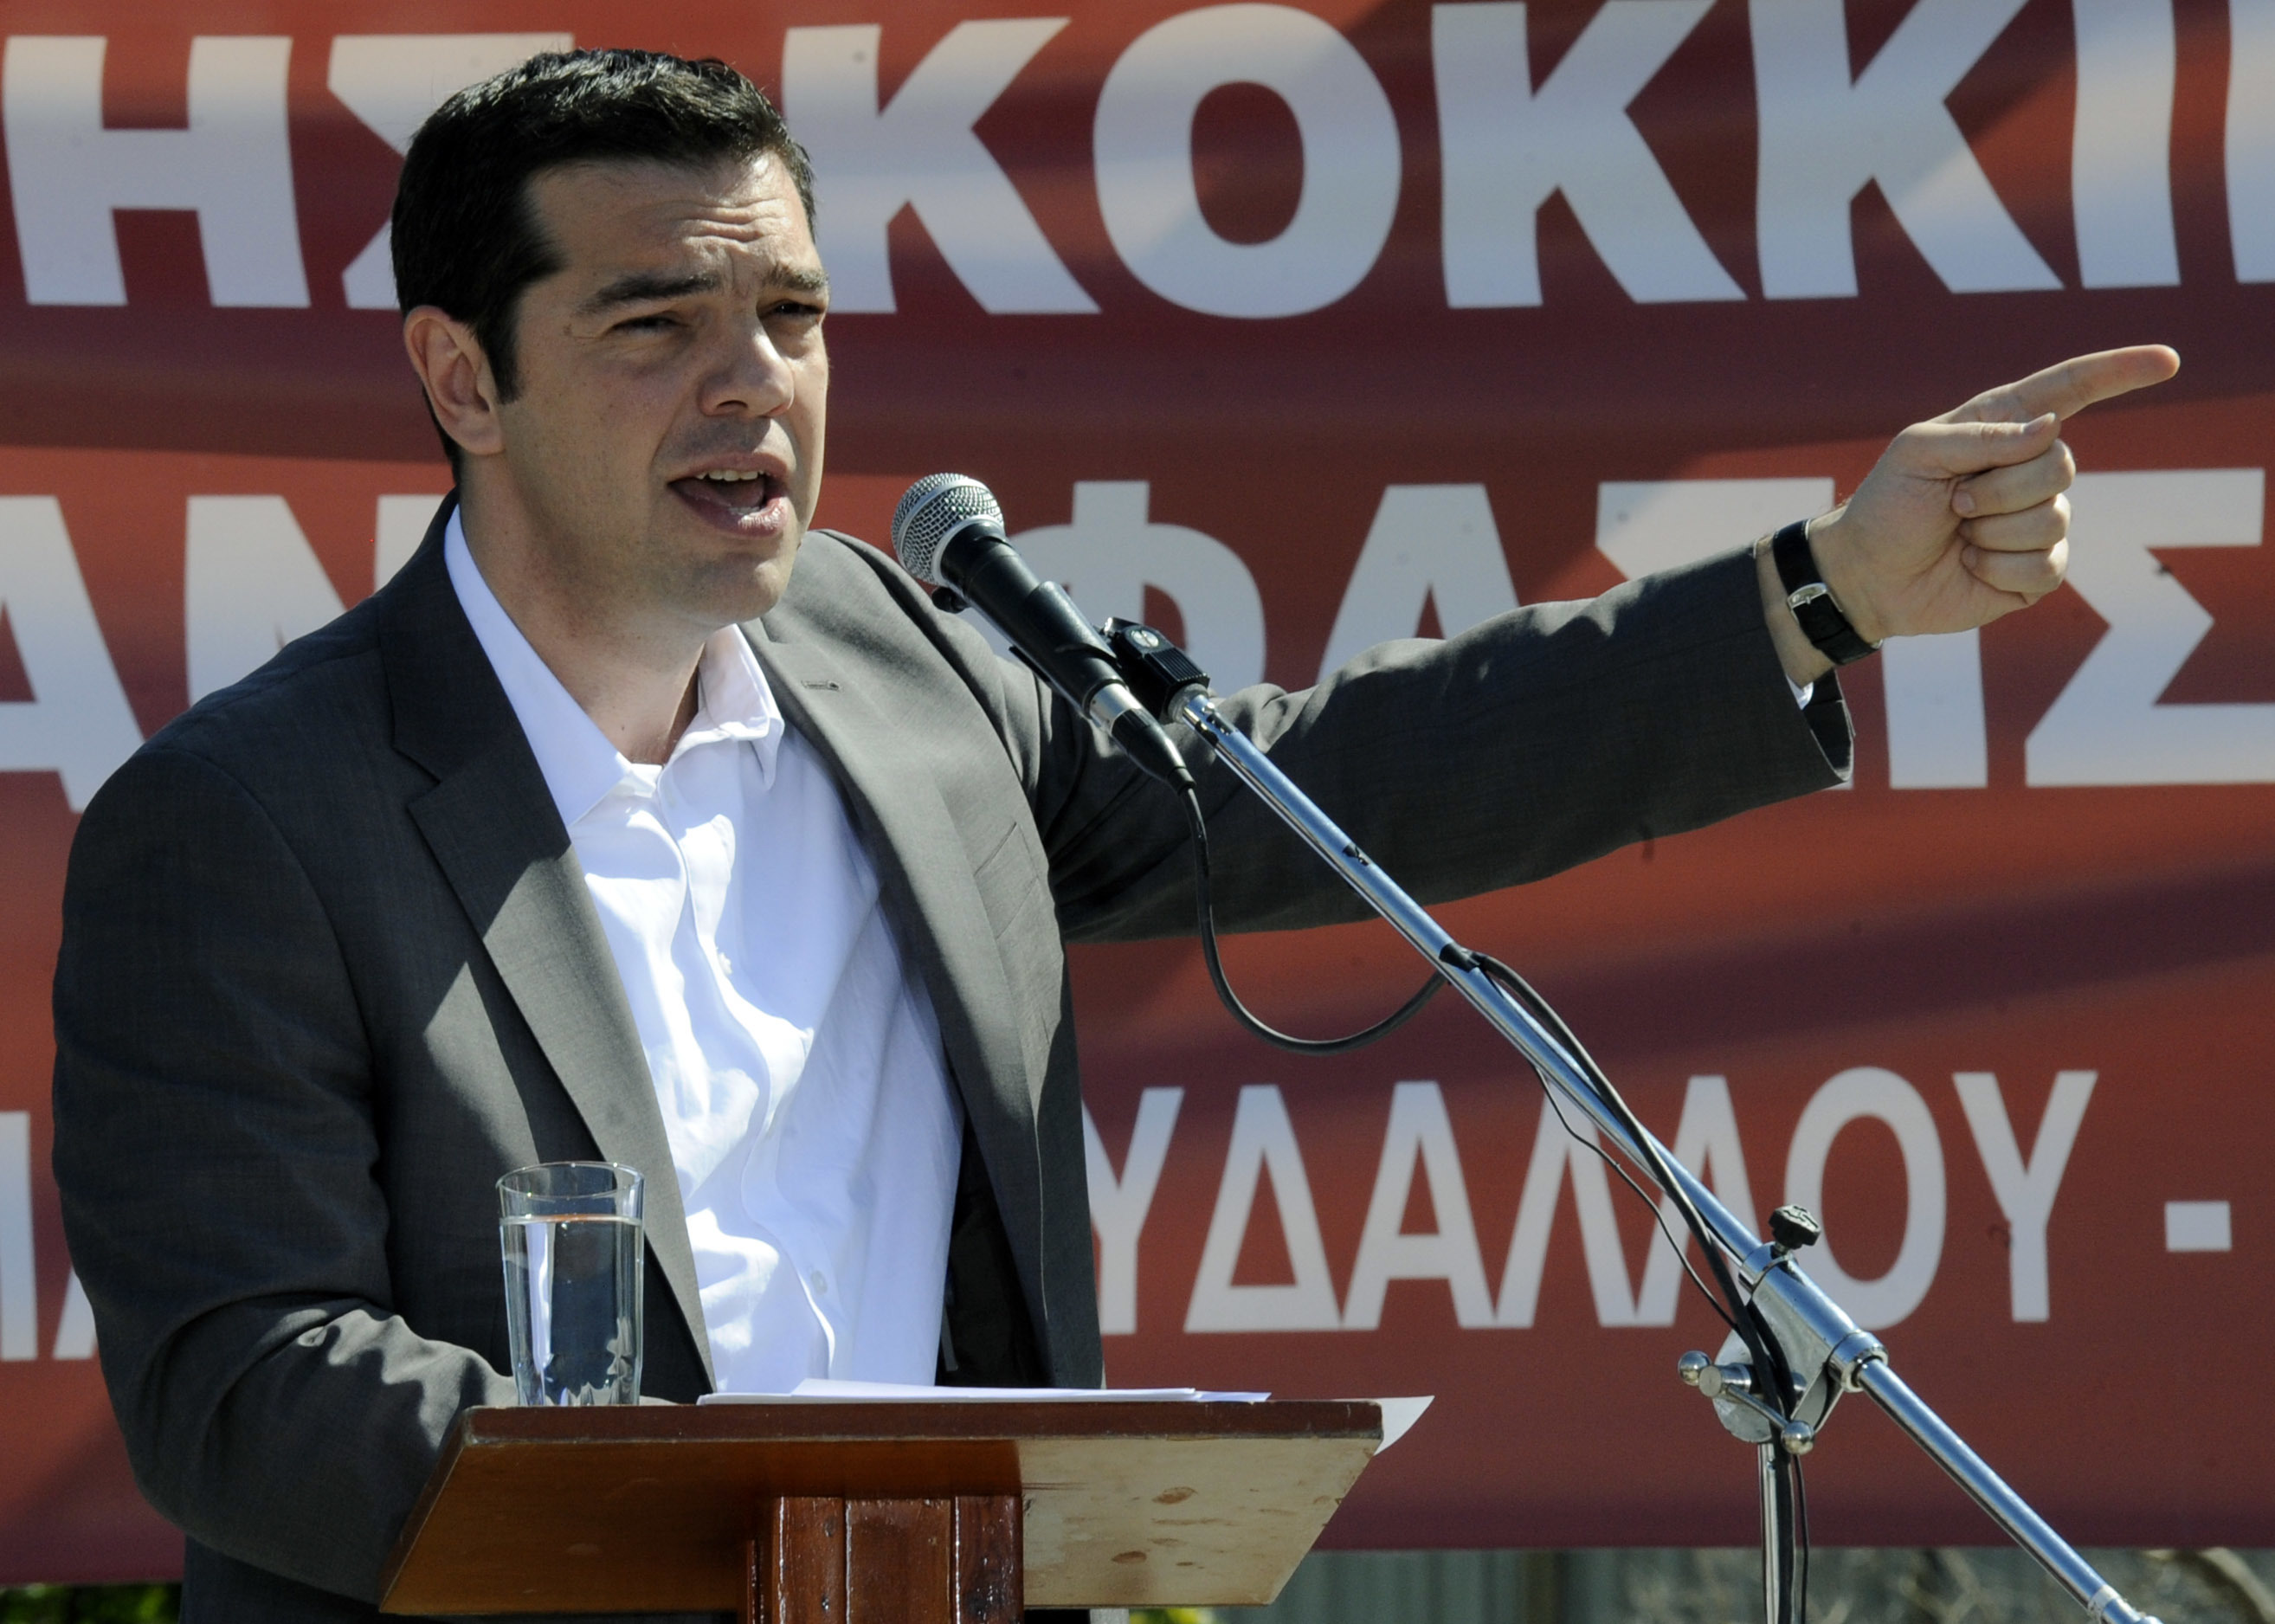 ΣΥΡΙΖΑ: “Η τρικομματική μνημονιακή κυβέρνηση καταρρέει”